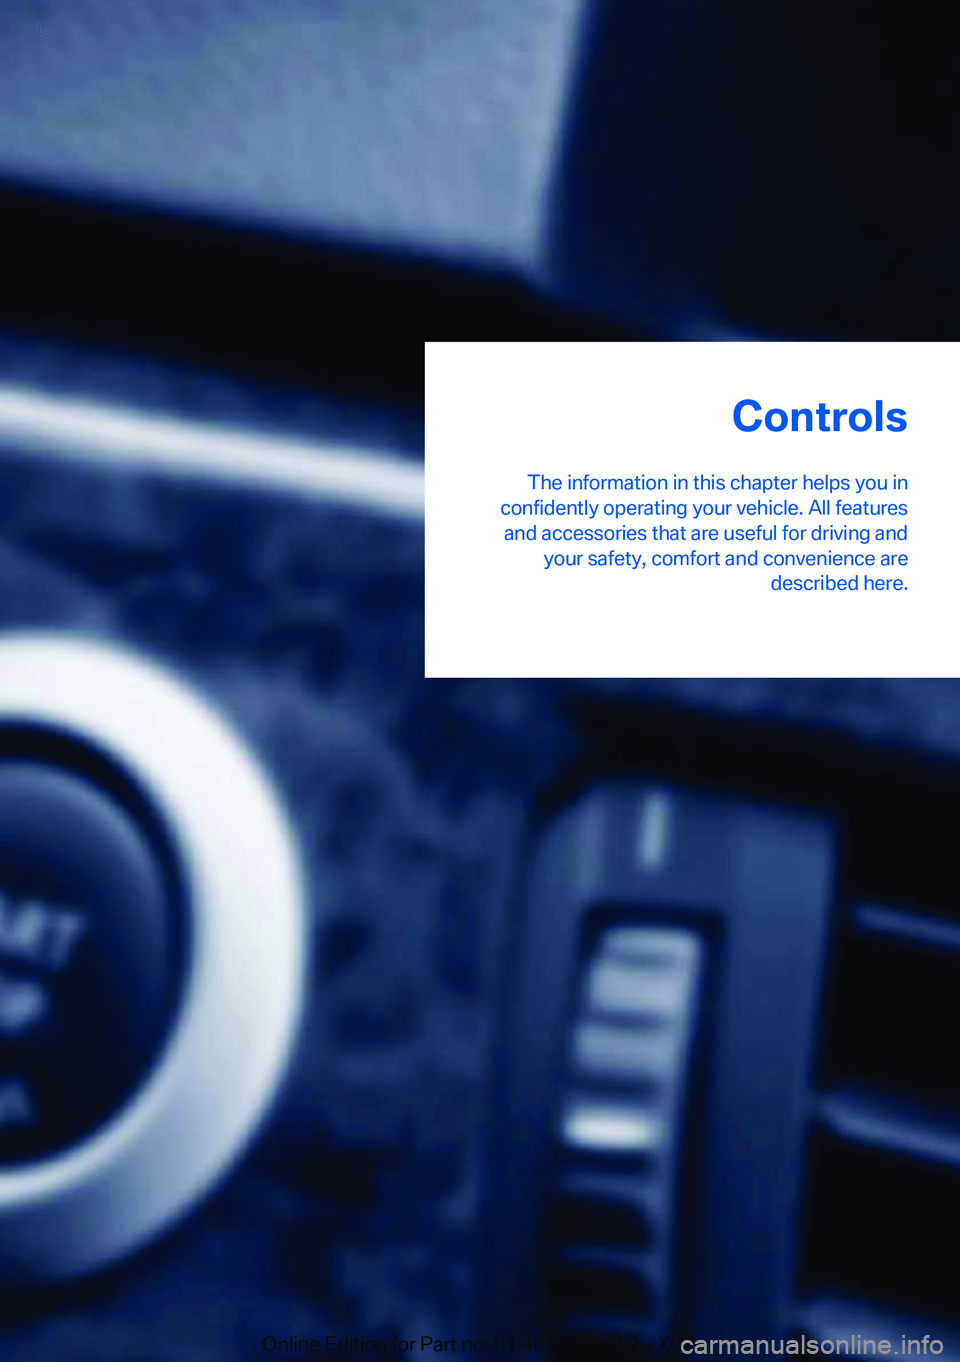 BMW M3 2017 Owners Guide �C�o�n�t�r�o�l�s
�T�h�e� �i�n�f�o�r�m�a�t�i�o�n� �i�n� �t�h�i�s� �c�h�a�p�t�e�r� �h�e�l�p�s� �y�o�u� �i�n
�c�o�n�f�i�d�e�n�t�l�y� �o�p�e�r�a�t�i�n�g� �y�o�u�r� �v�e�h�i�c�l�e�.� �A�l�l� �f�e�a�t�u�r�e